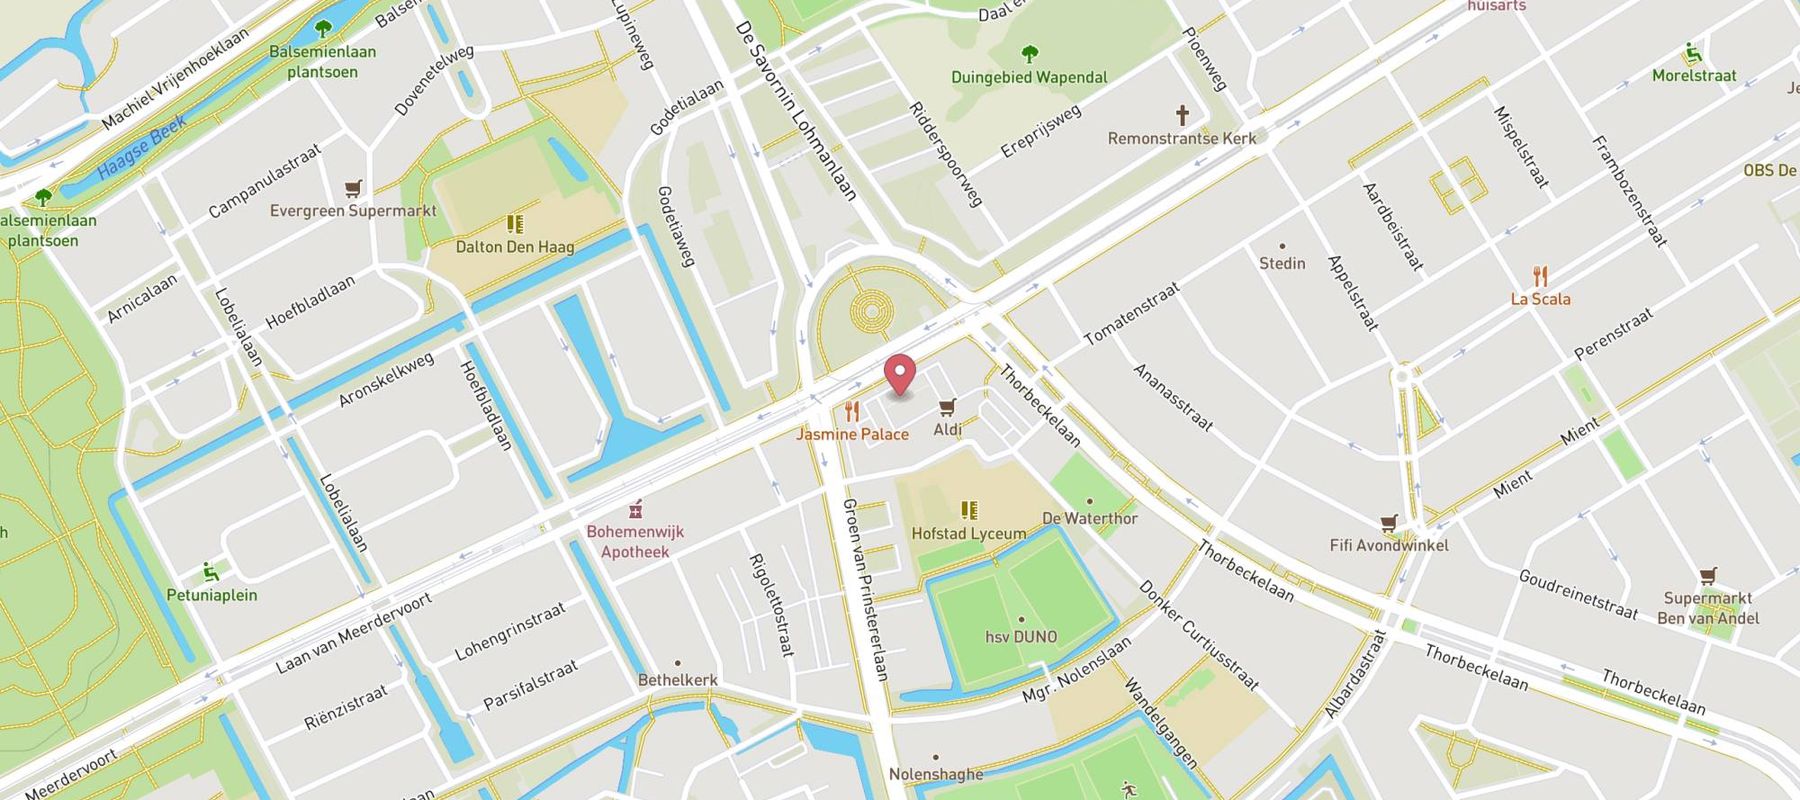 Hans Anders Opticien Den Haag Winkelcentrum De Savornin Lohmanplein map